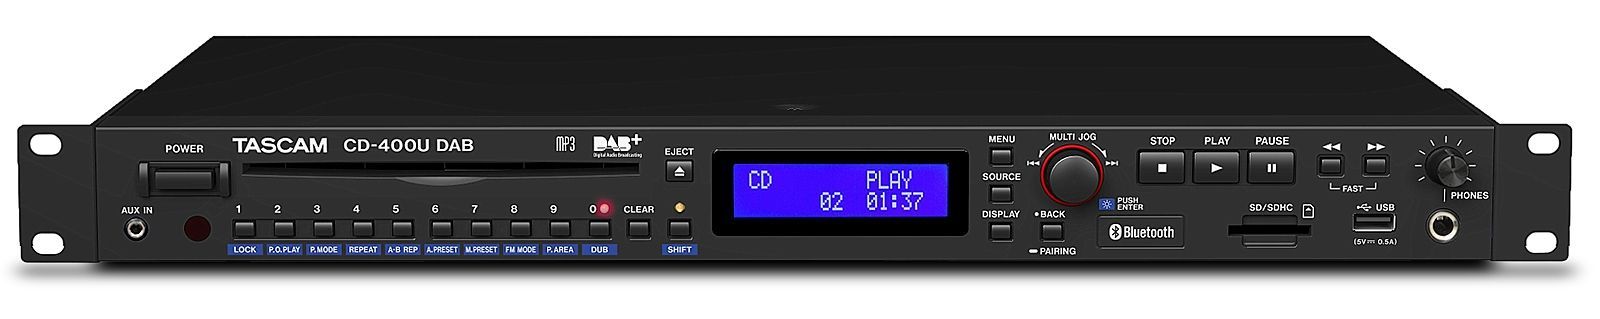 Tascam CD-400U DAB CD/USB/SD Medien-Player mit Radio- und Bluetooth-Empfänger